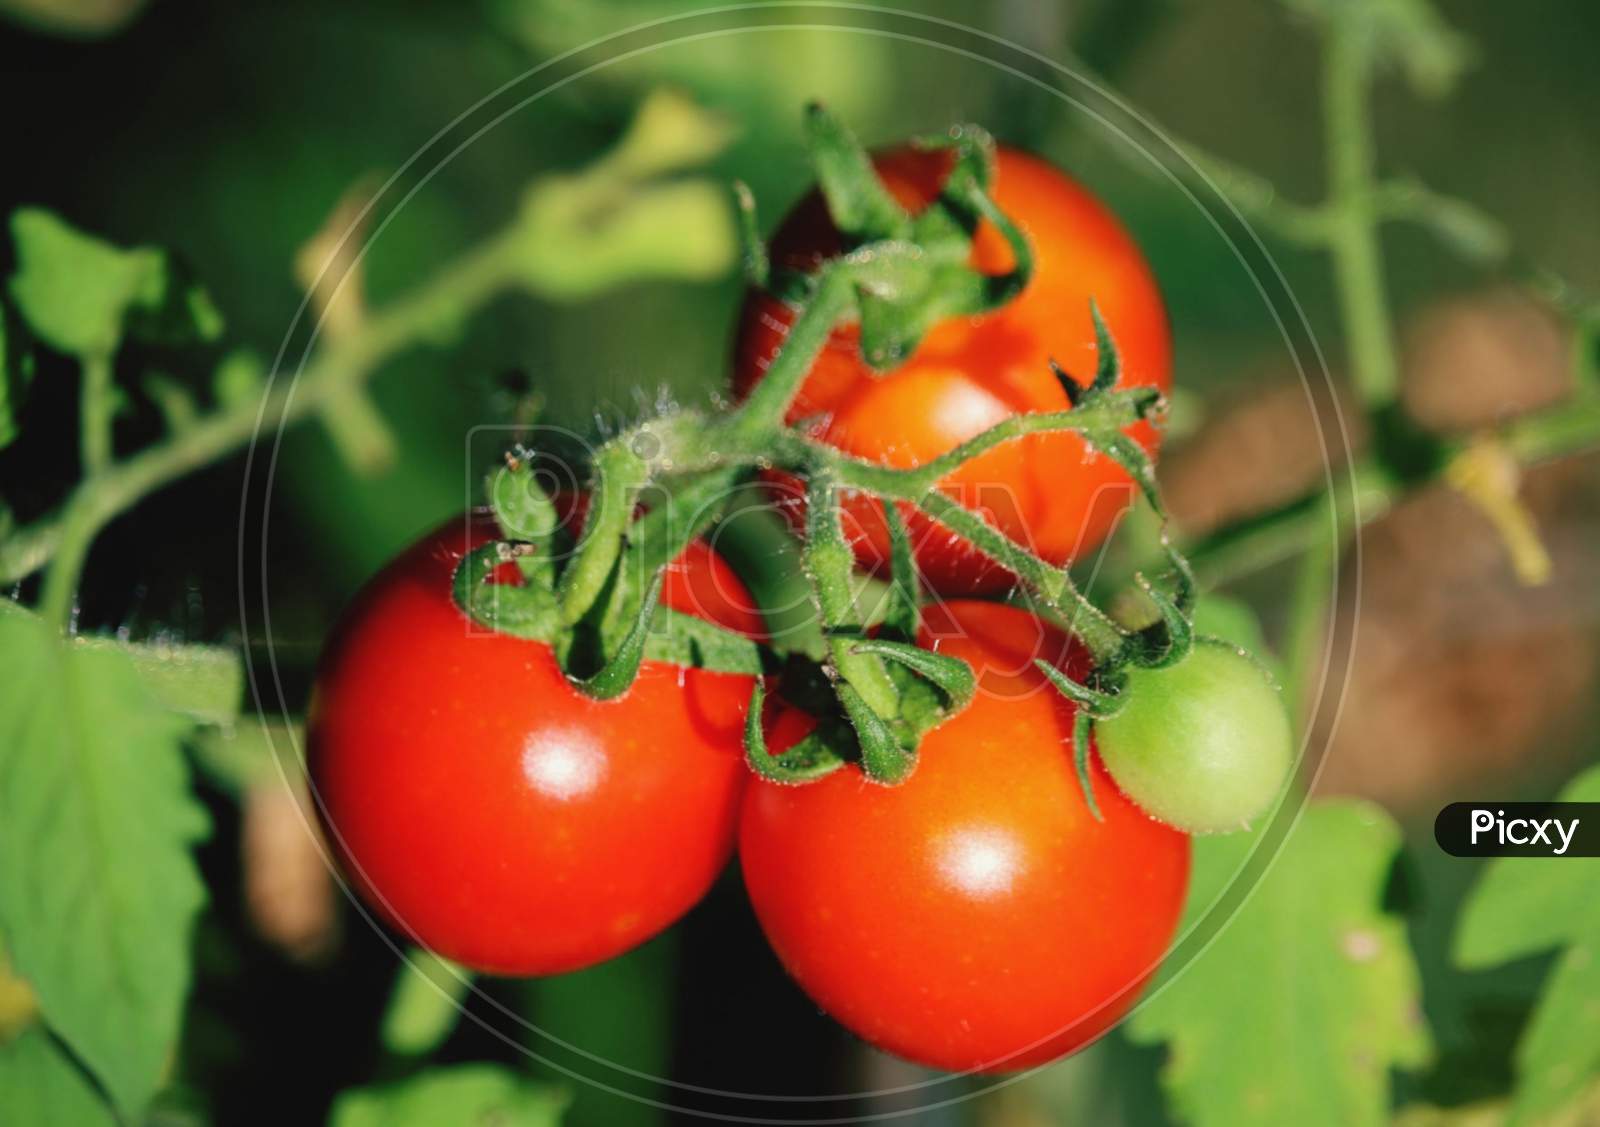 Beautiful tomato